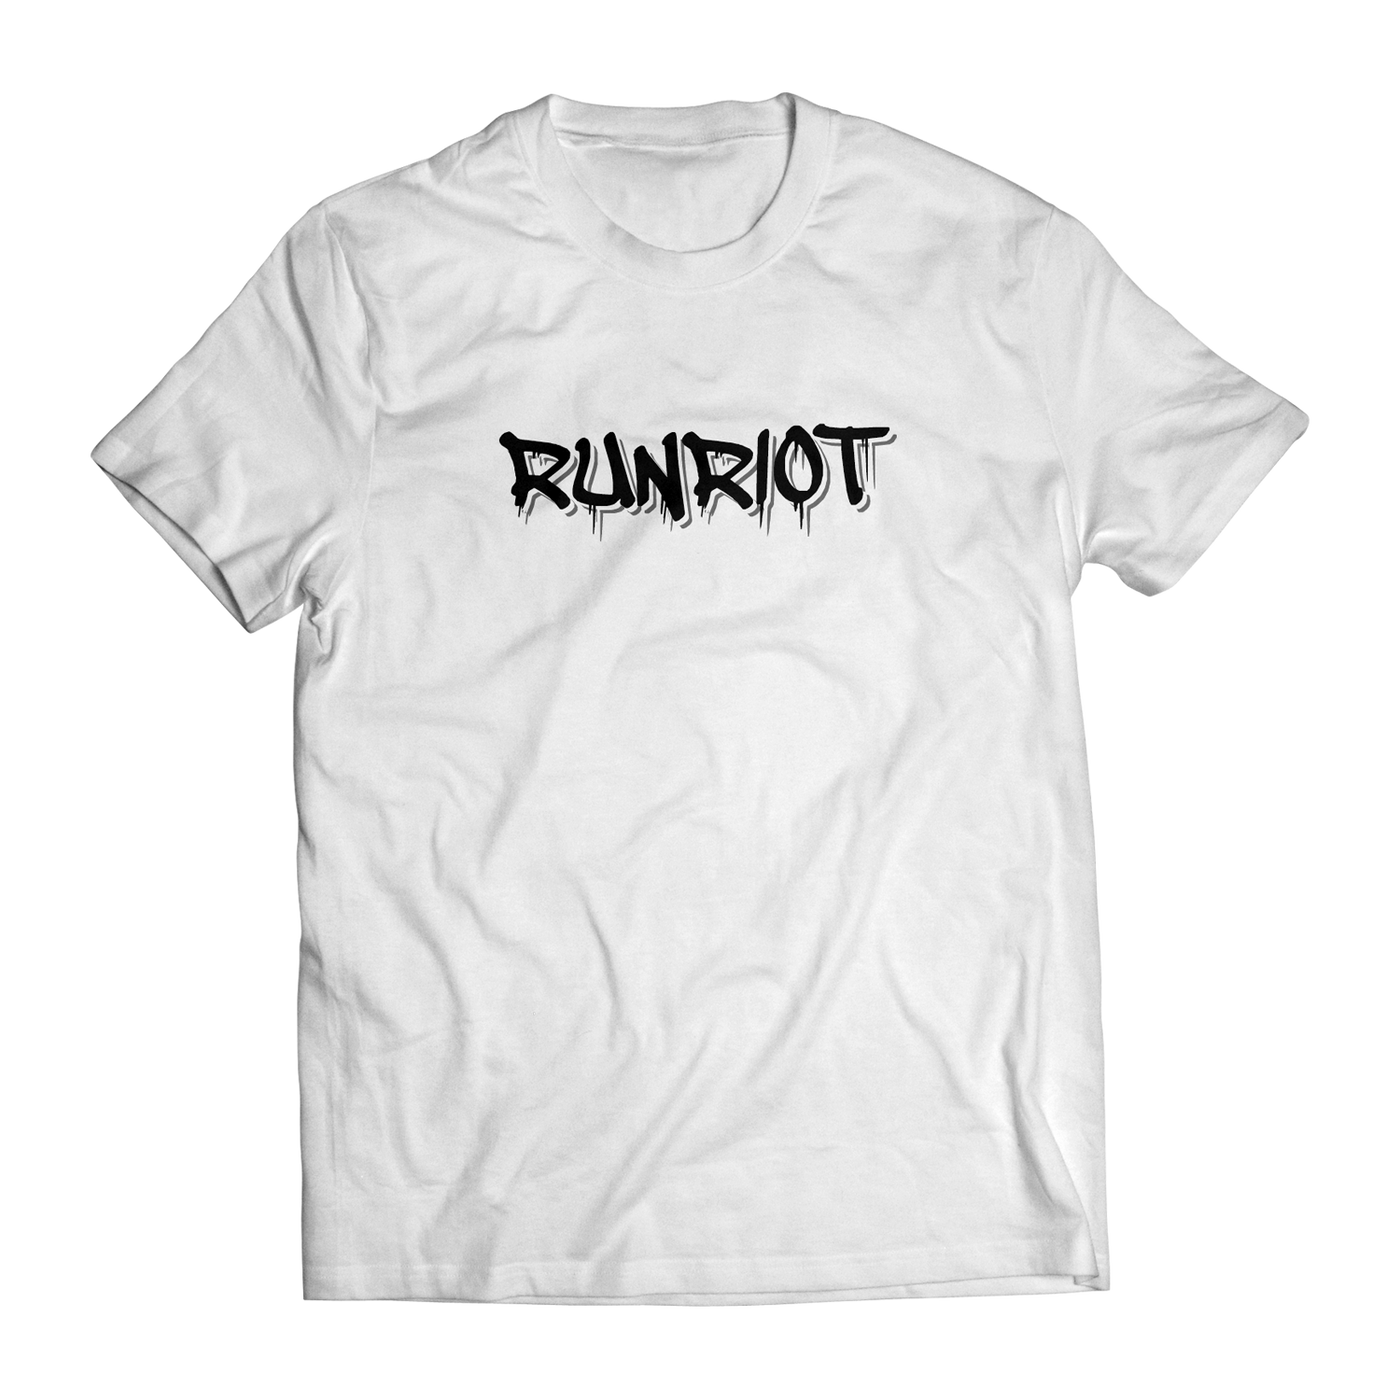 R!OT T-Shirt - White